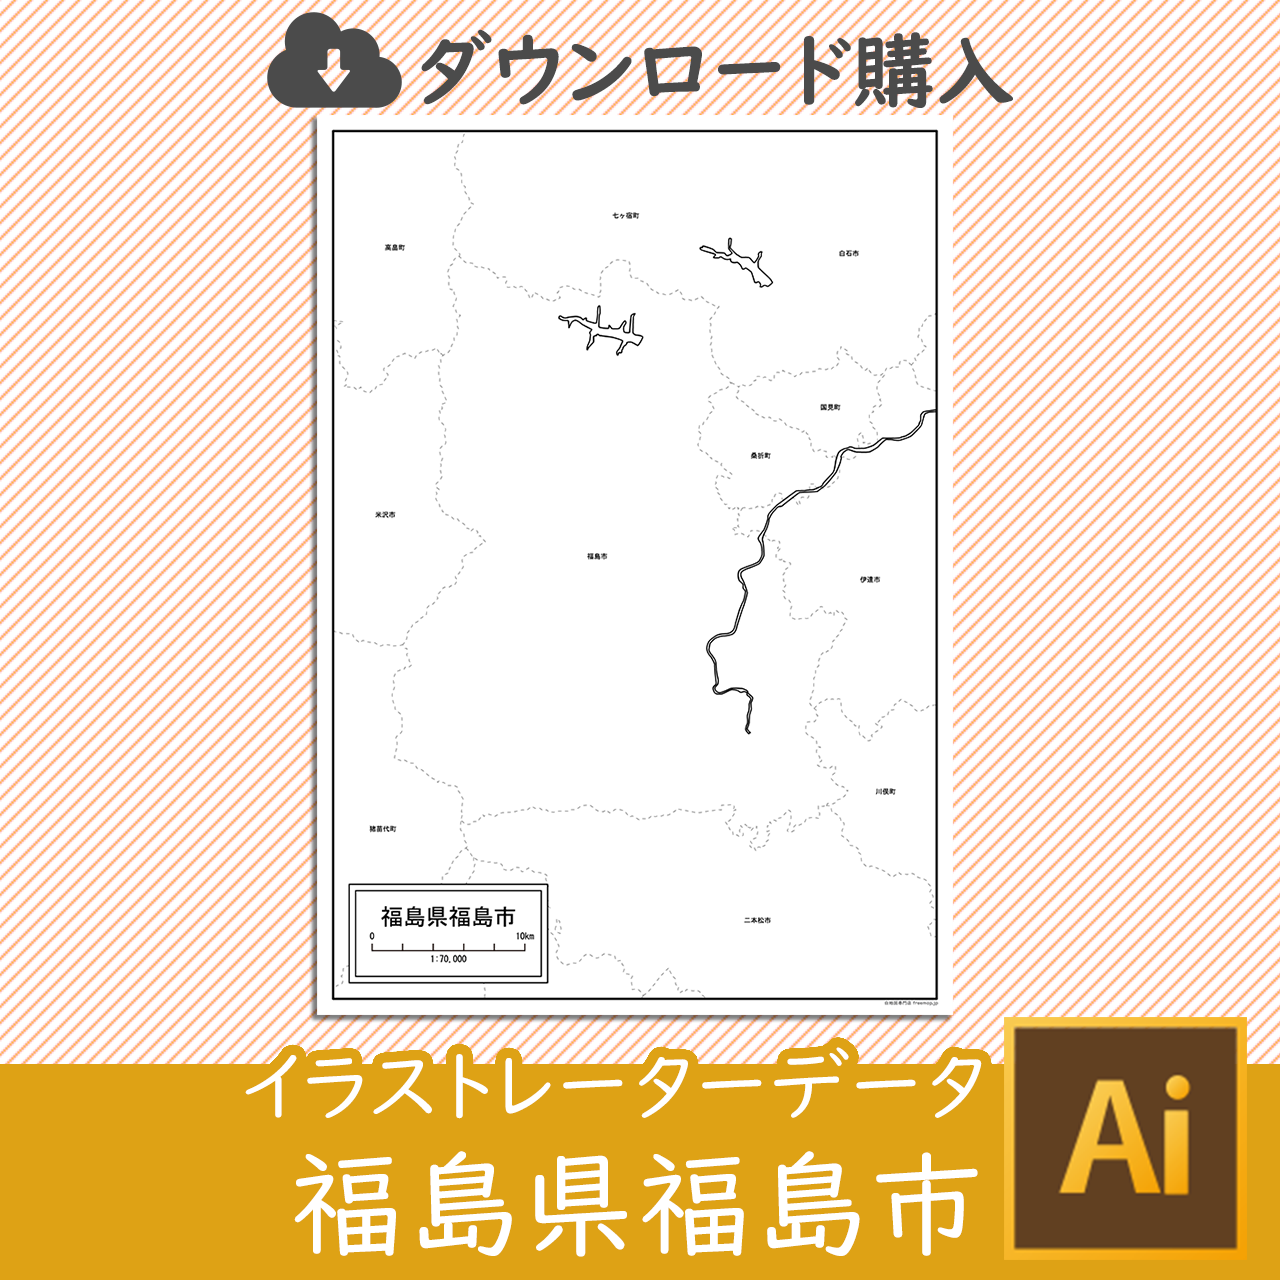 福島市のaiデータのサムネイル画像